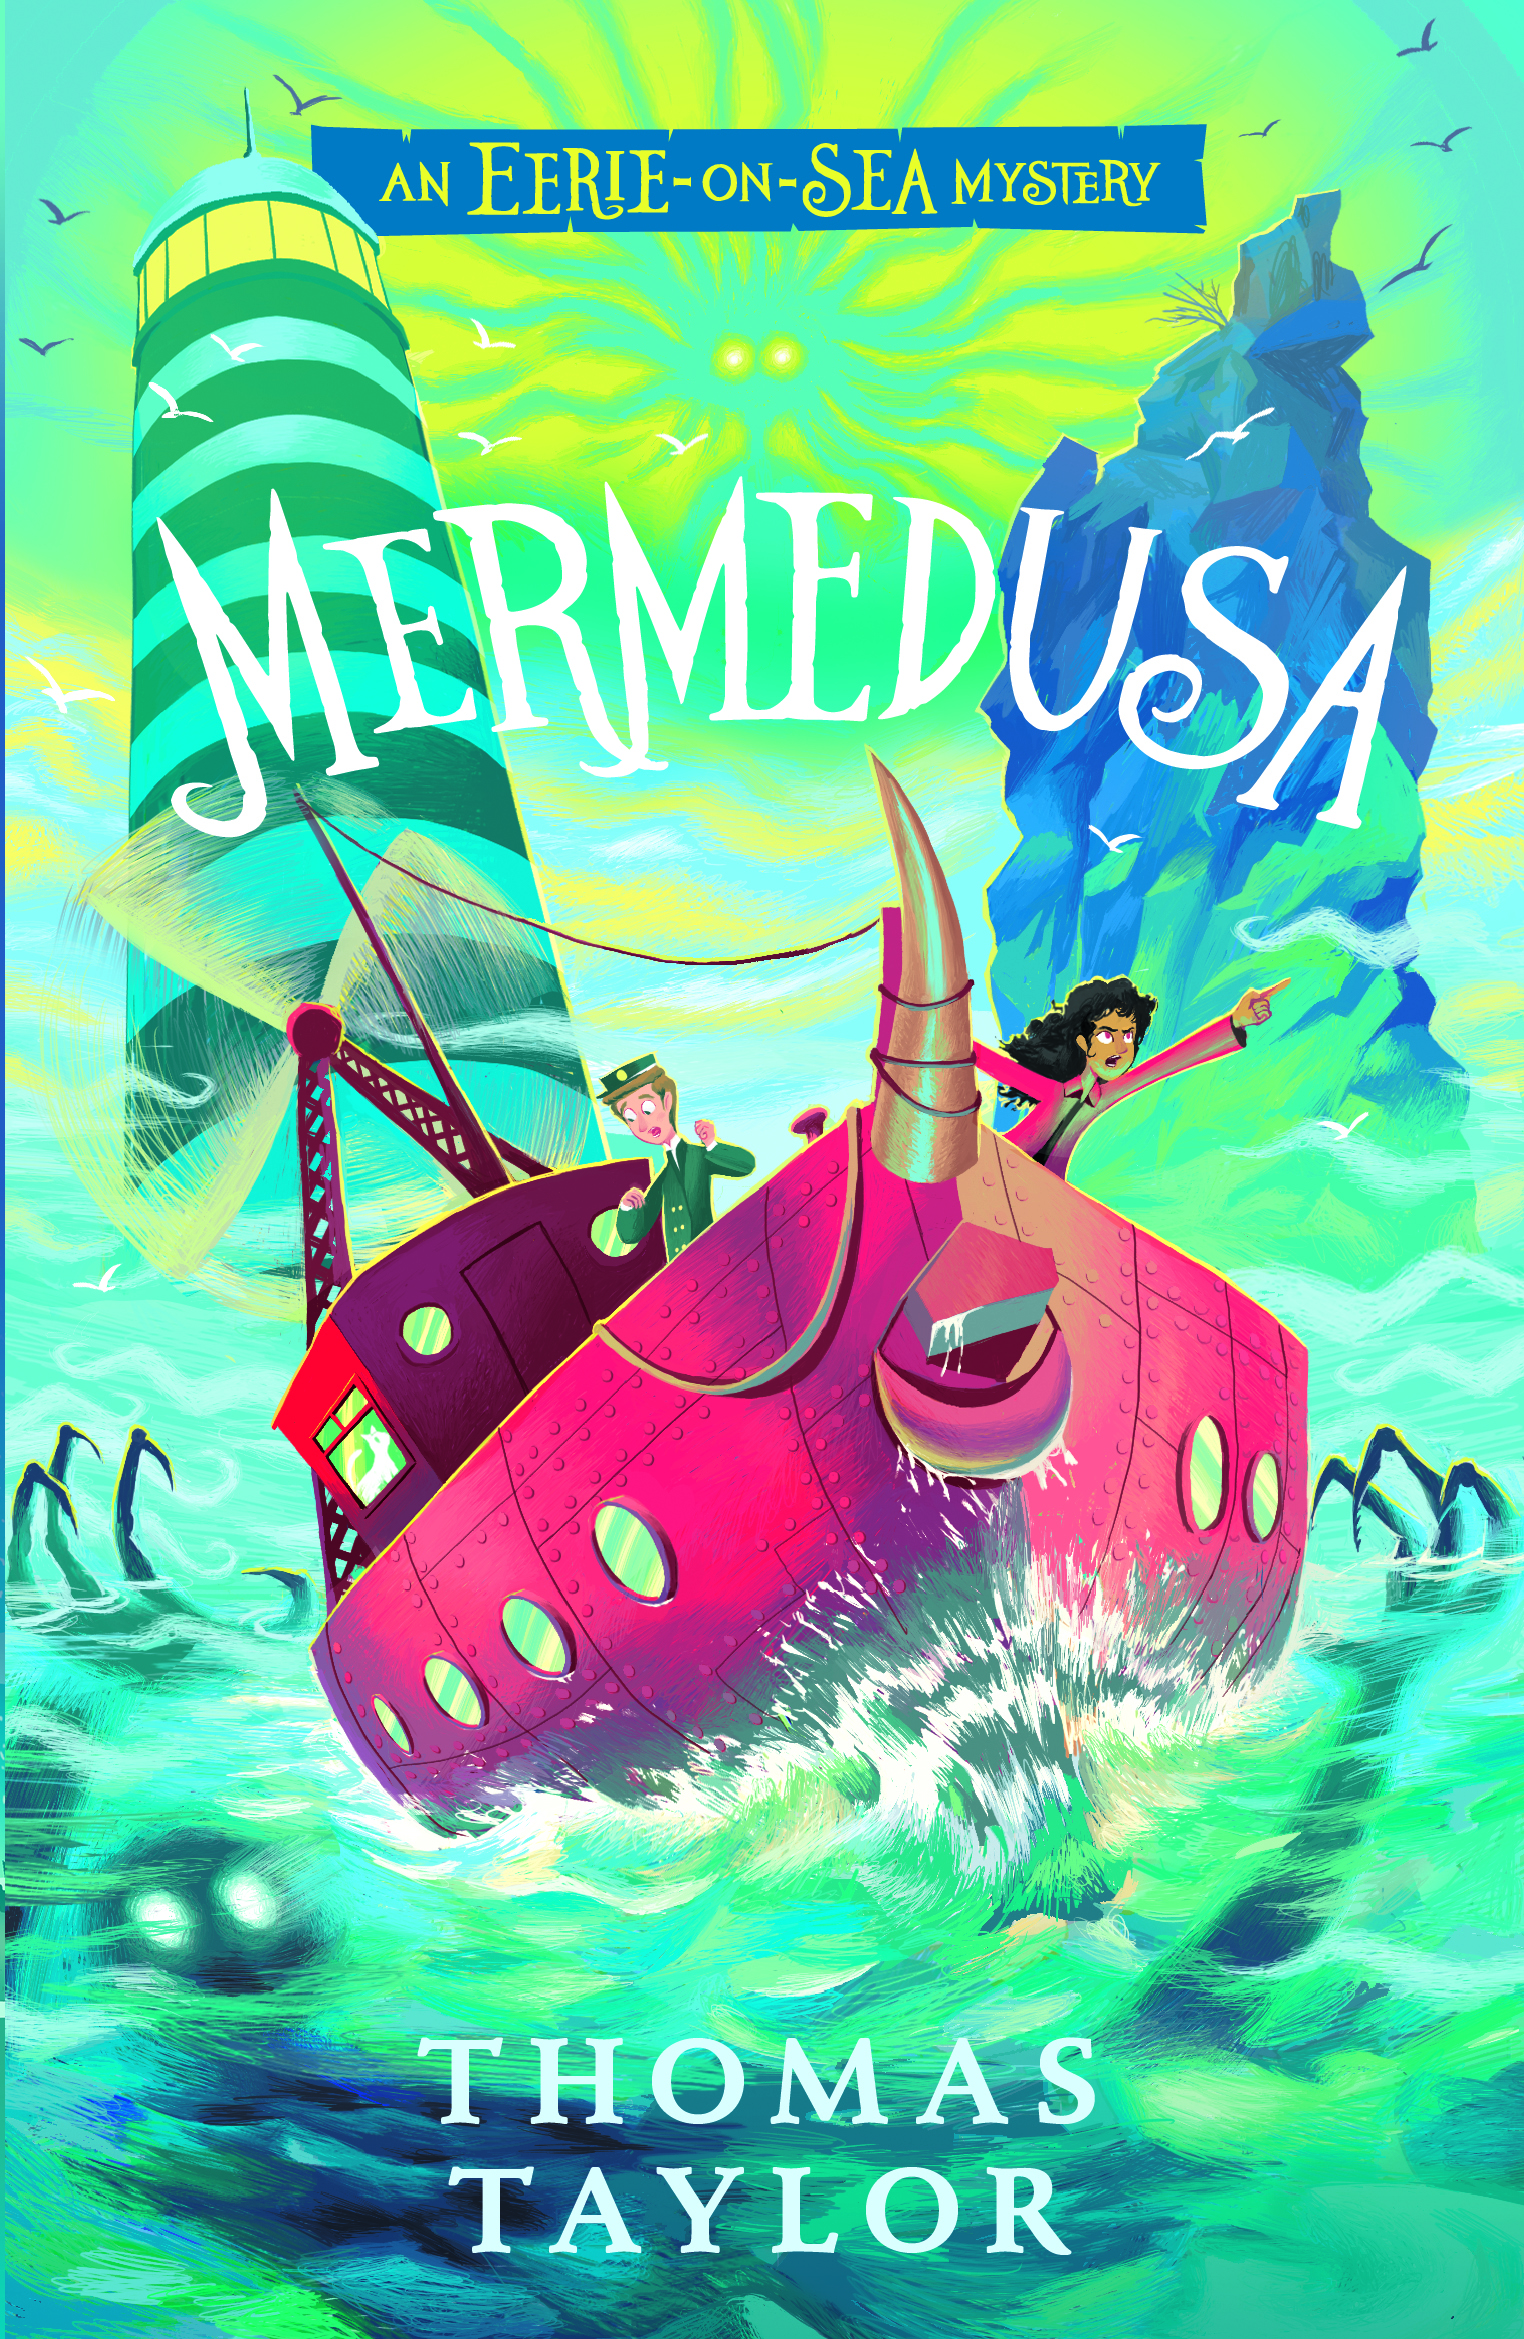 Mermedusa